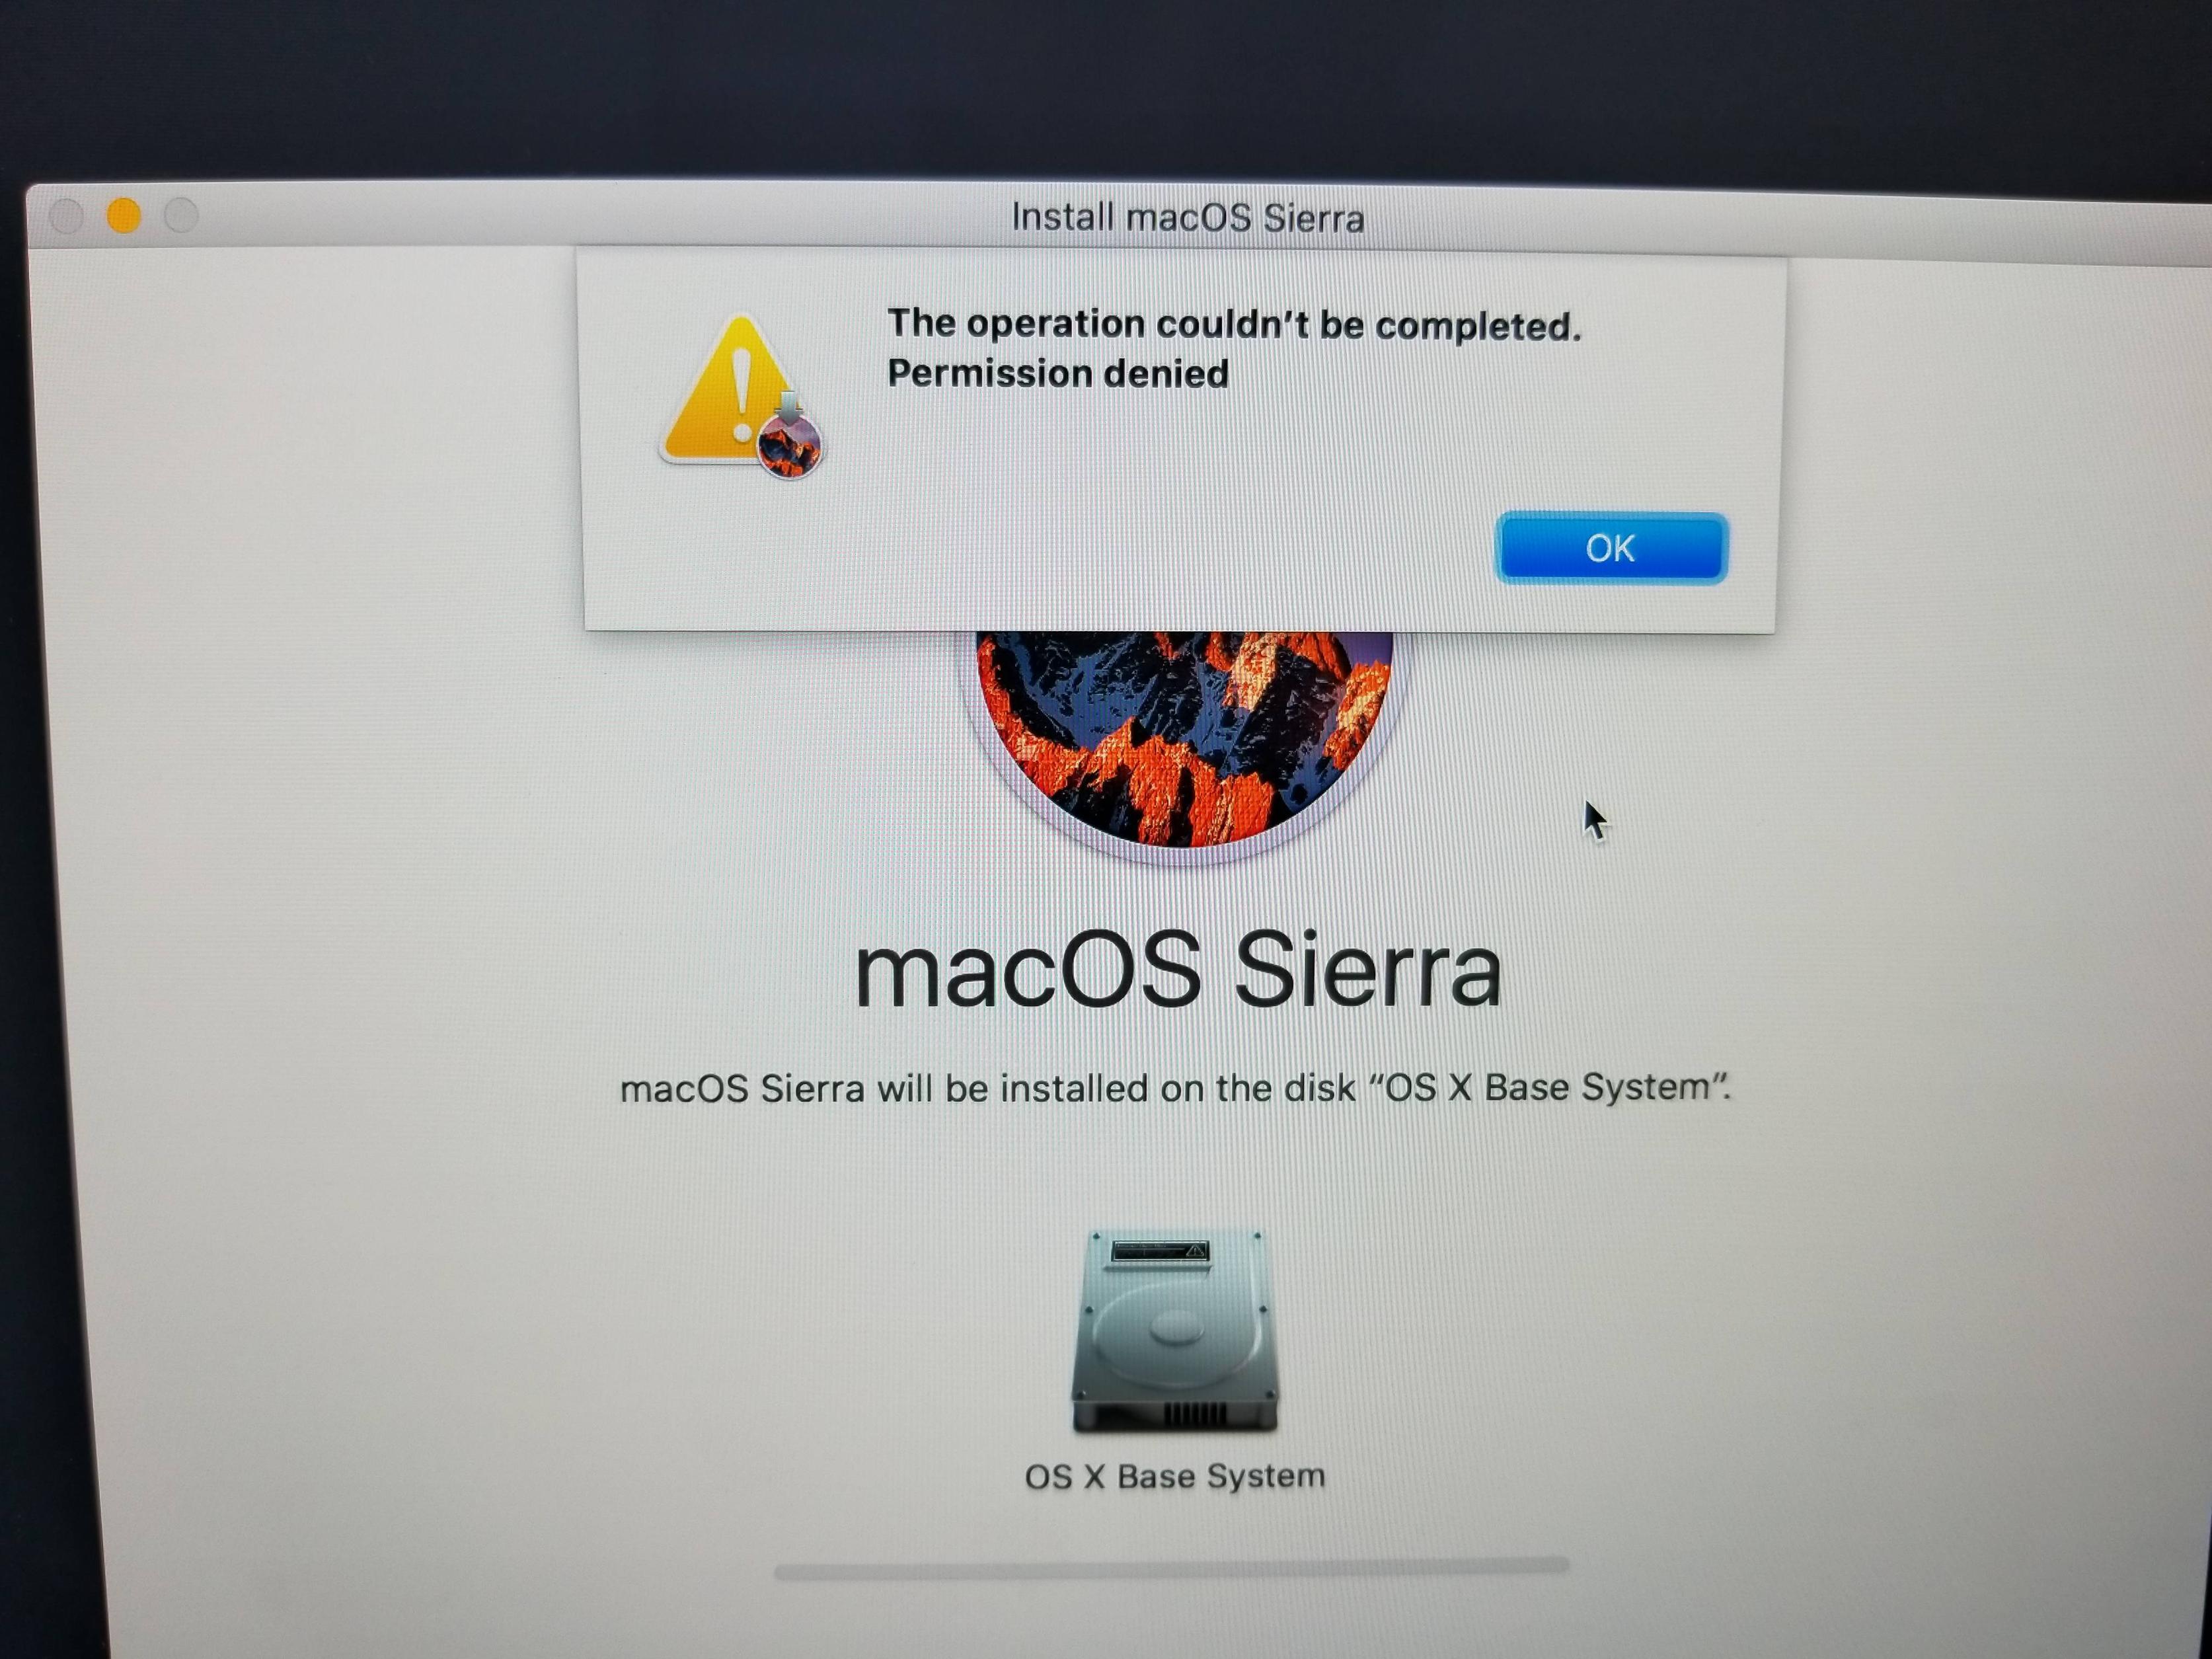 restart mac for fesh install